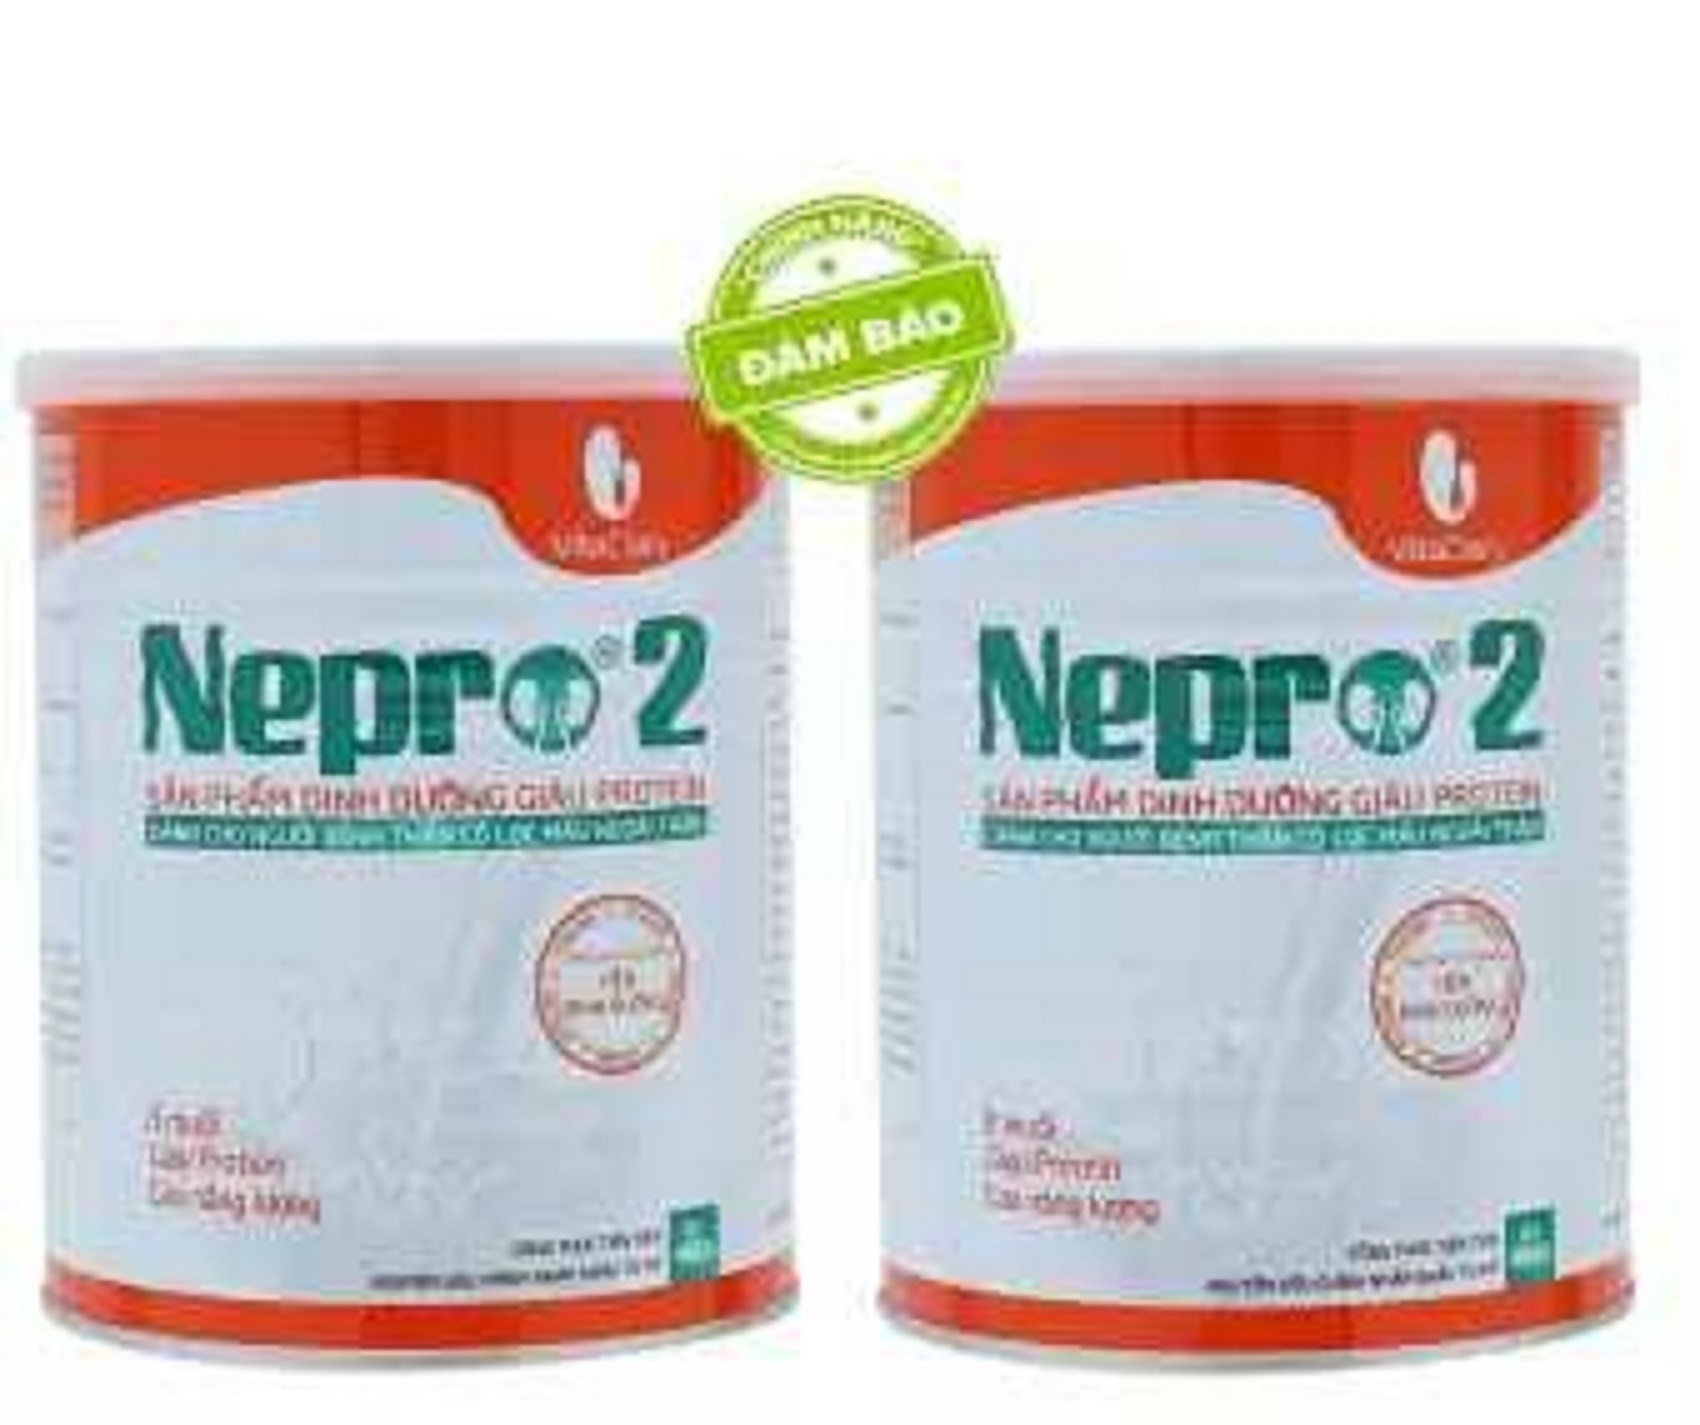 Sữa Nepro 2 900g Dành Cho Người Bệnh Có Lọc Máu Ngoài Thận